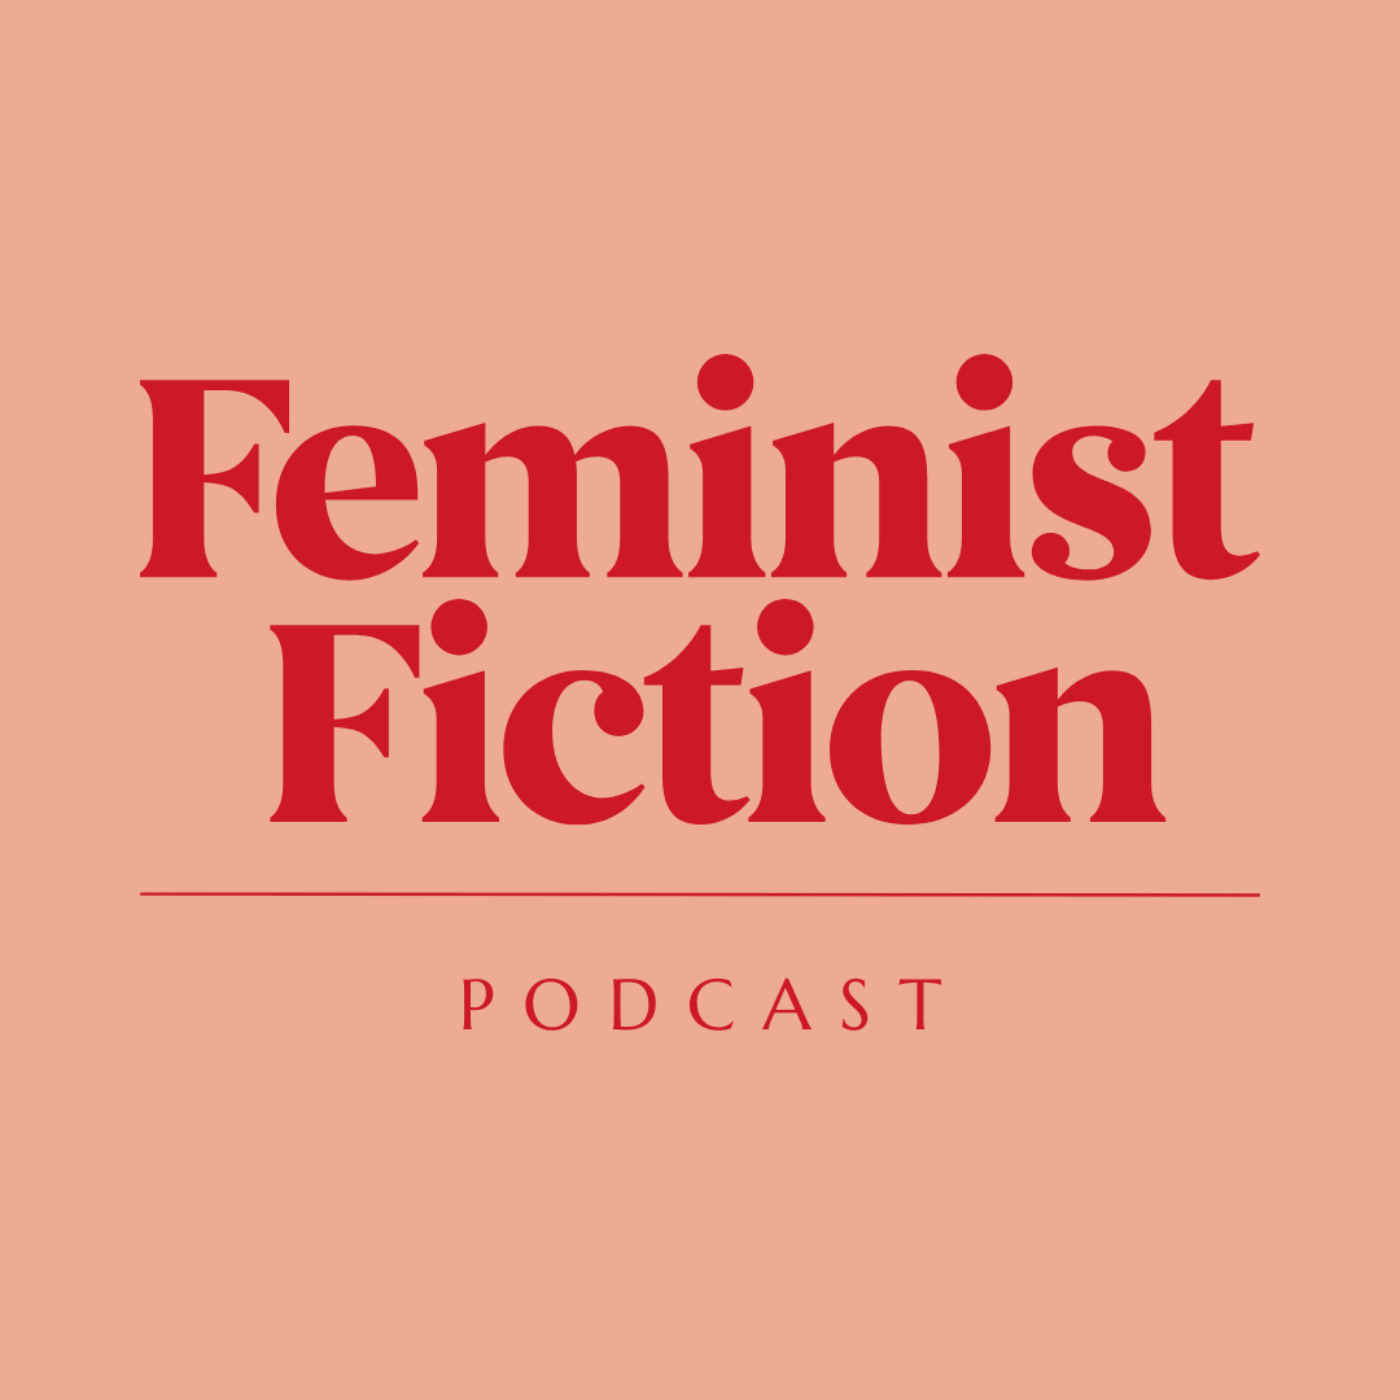 Feminist Fiction